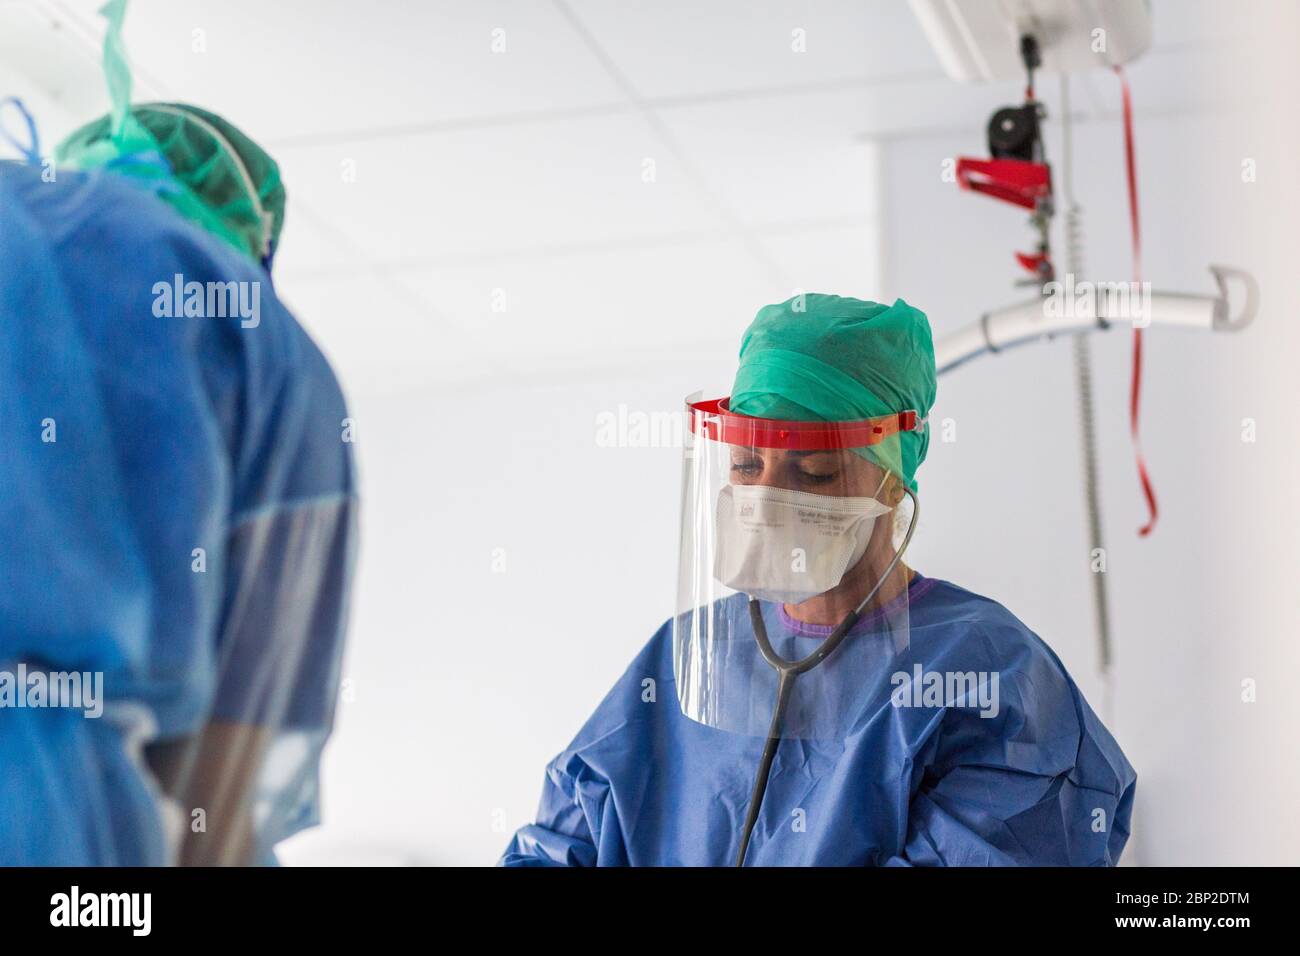 Intensivstation, Patienten von Covid 19, Krankenhaus Bordeaux, Frankreich. Stockfoto